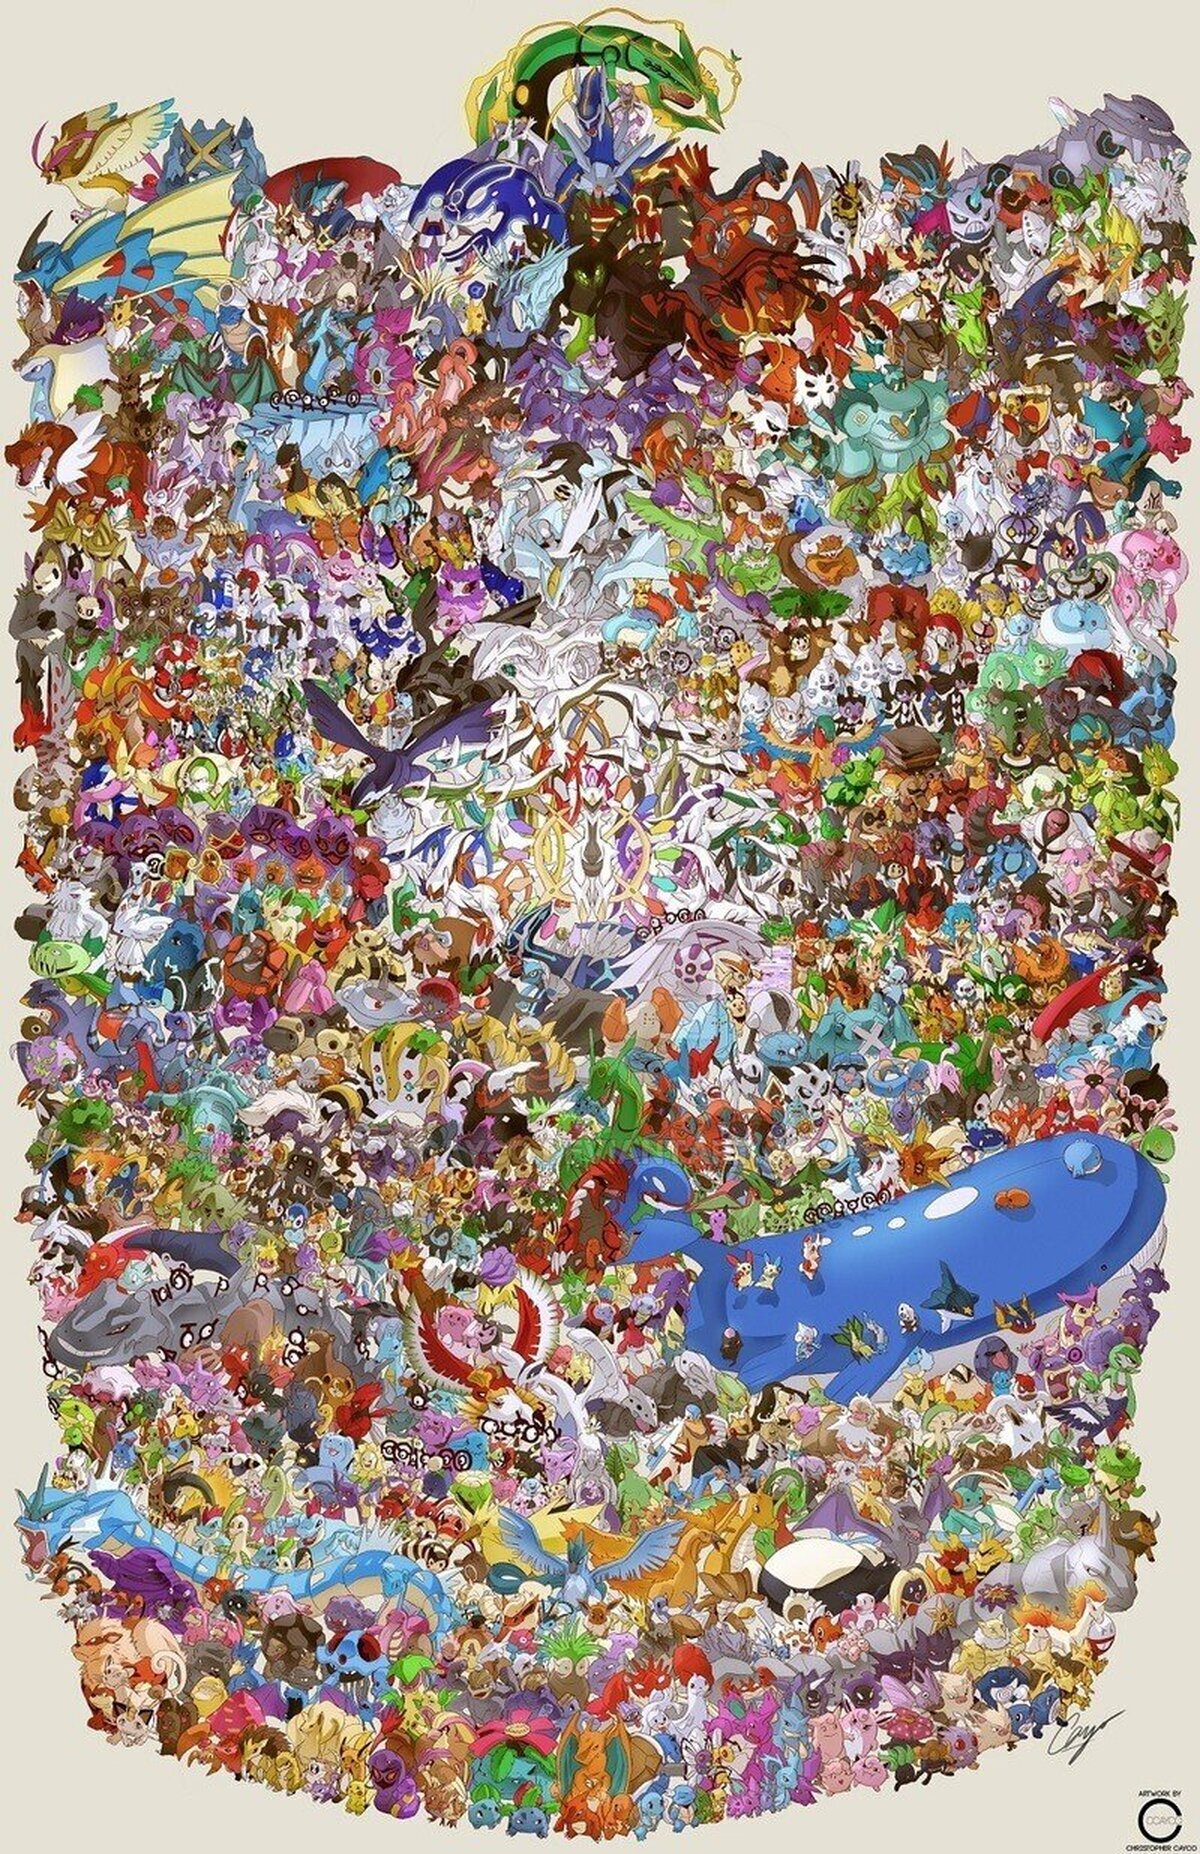 Todos los Pokémon a escala en una sola imagen